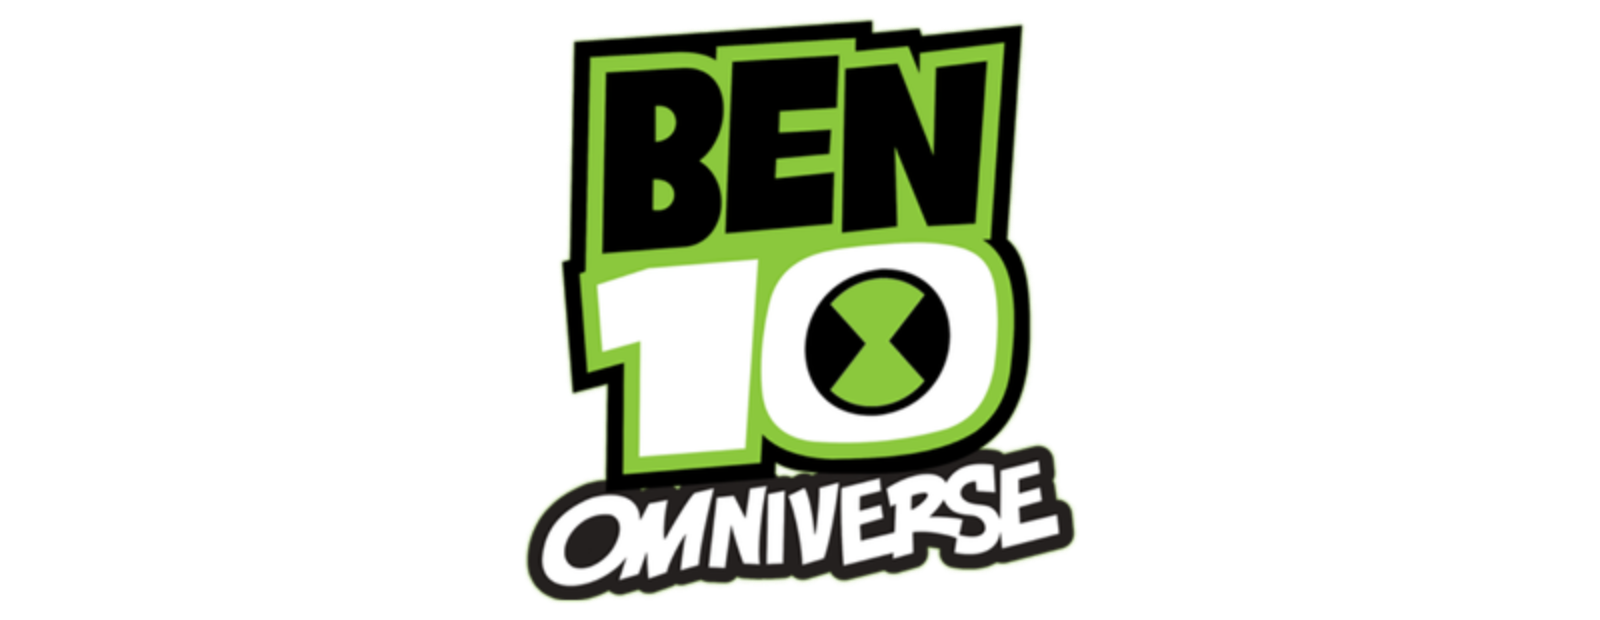 Ben 10: Omniverse 